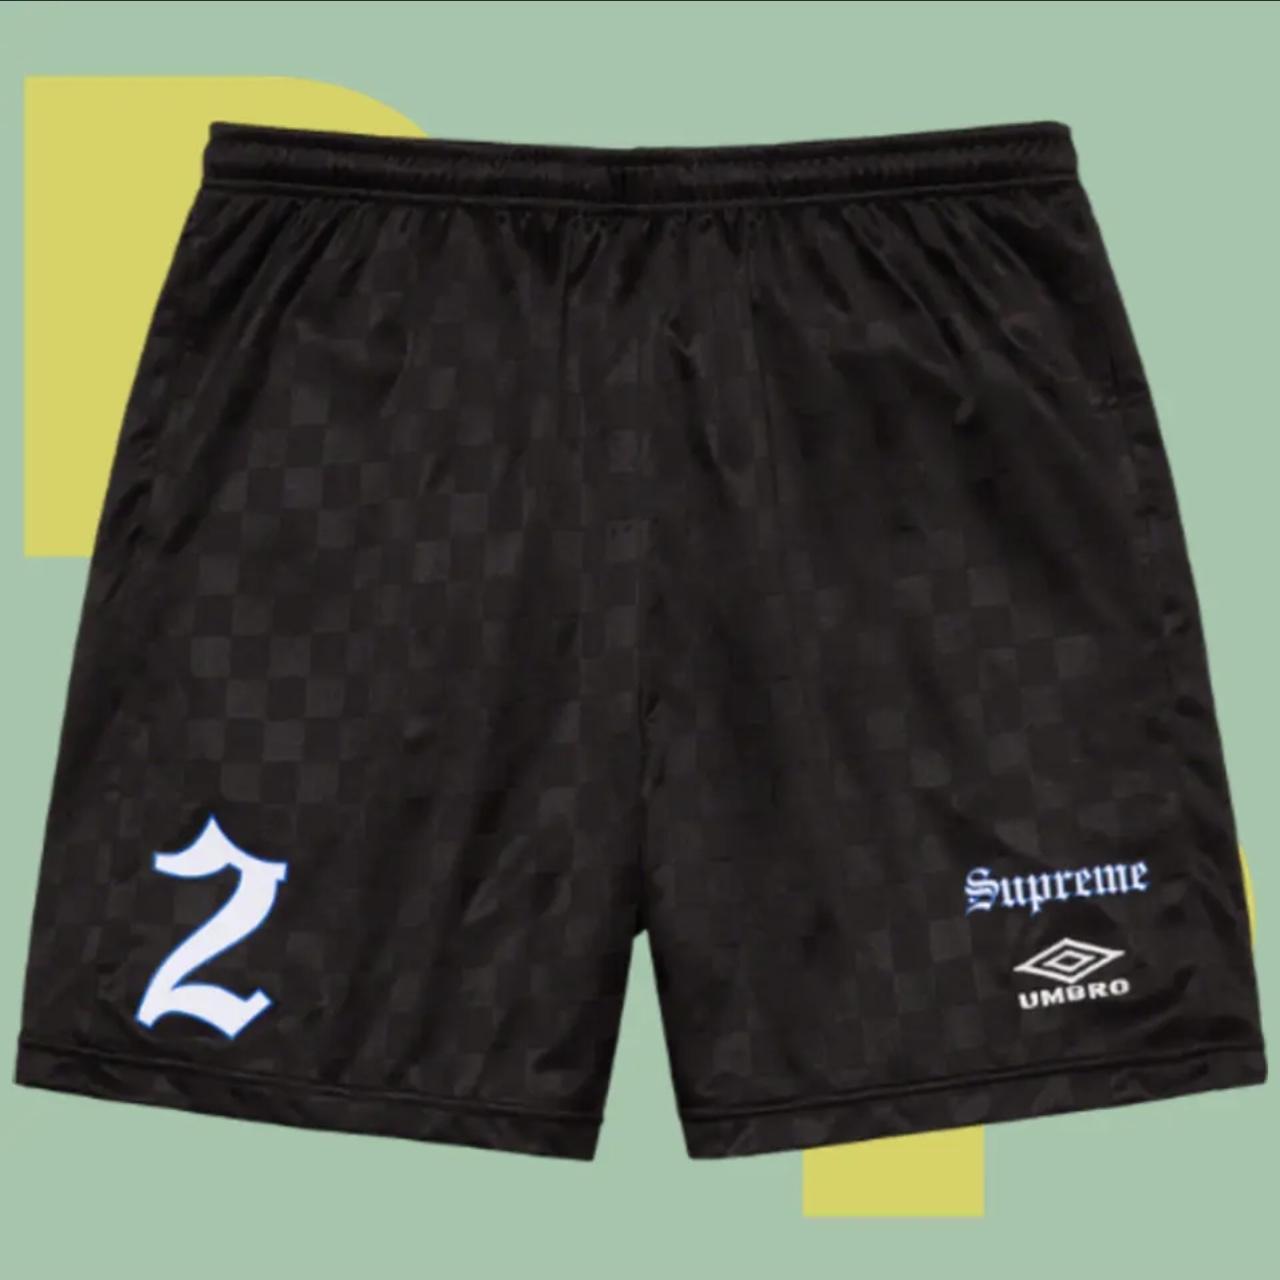 Supreme Soccer Short Black